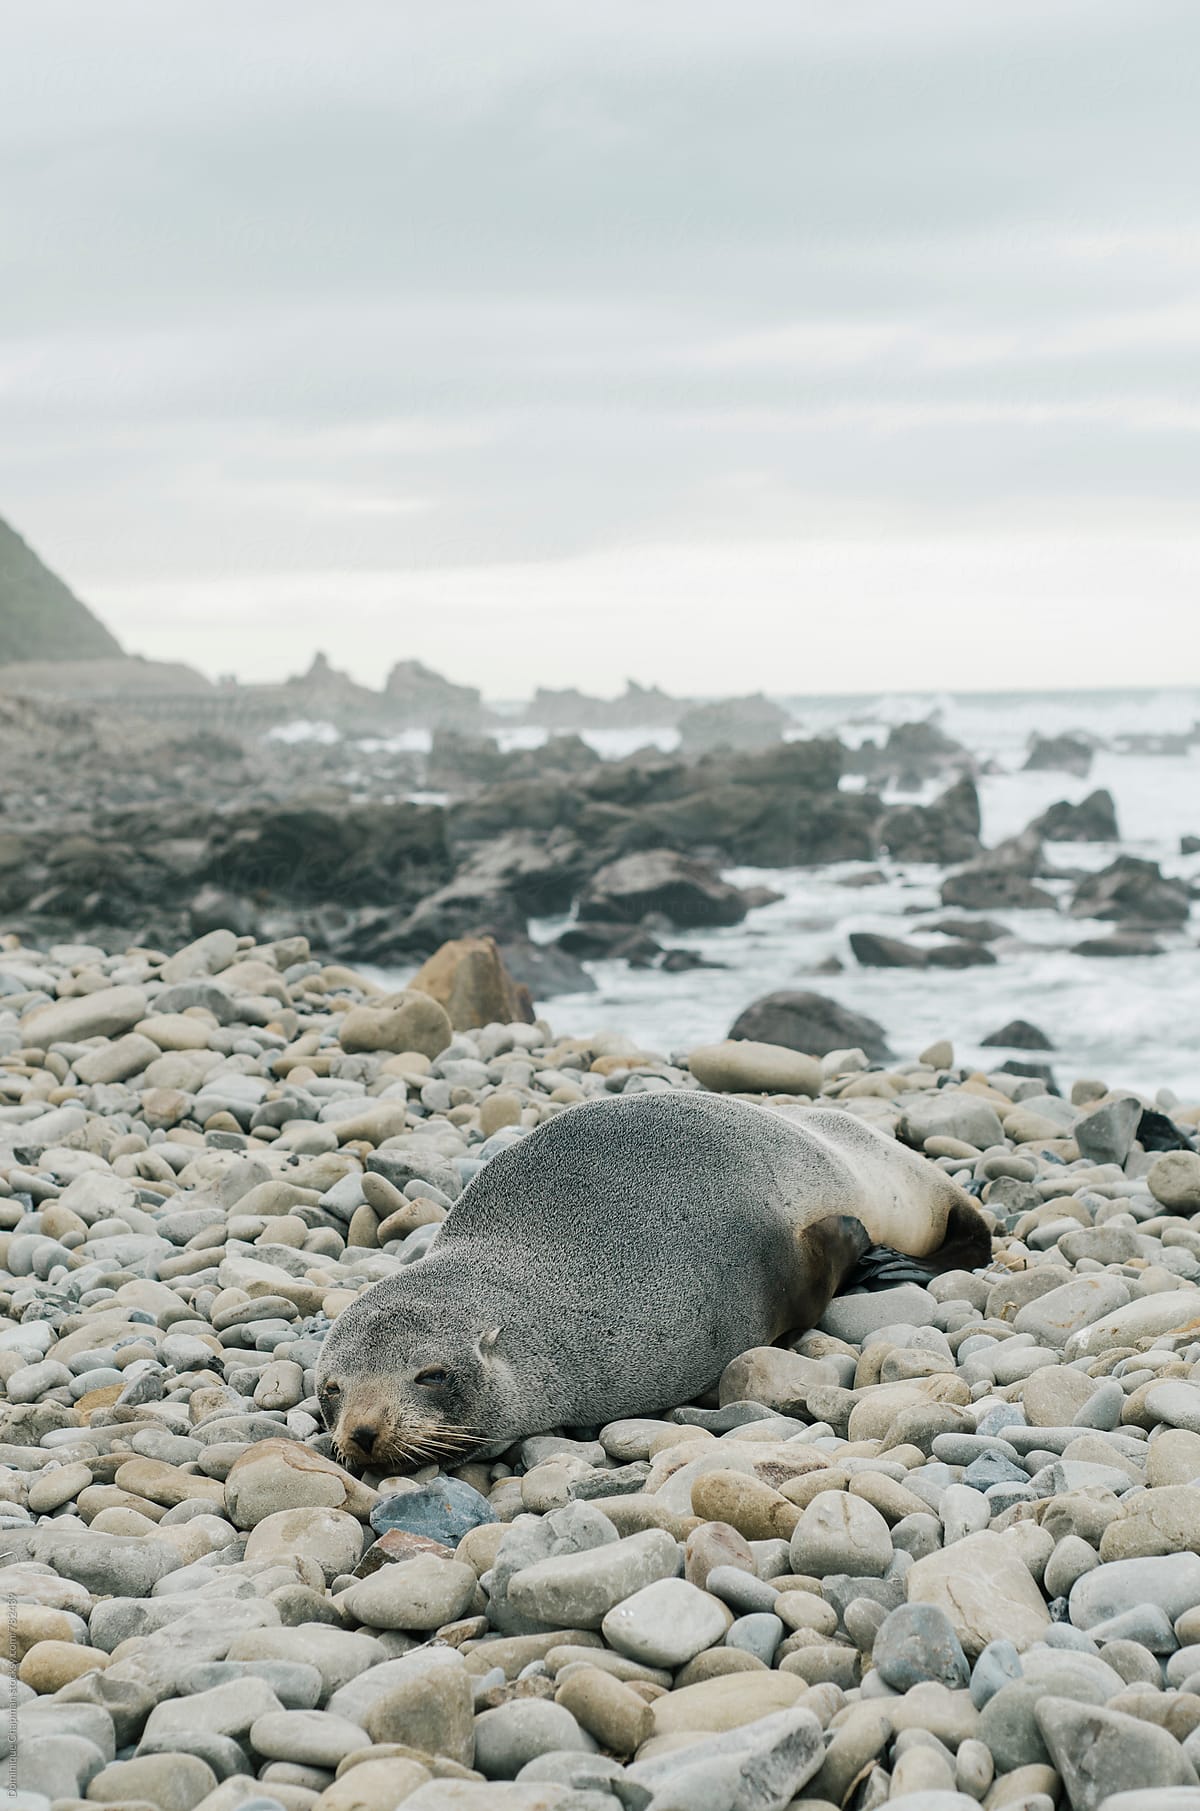 Seal resting on rocks by ocean